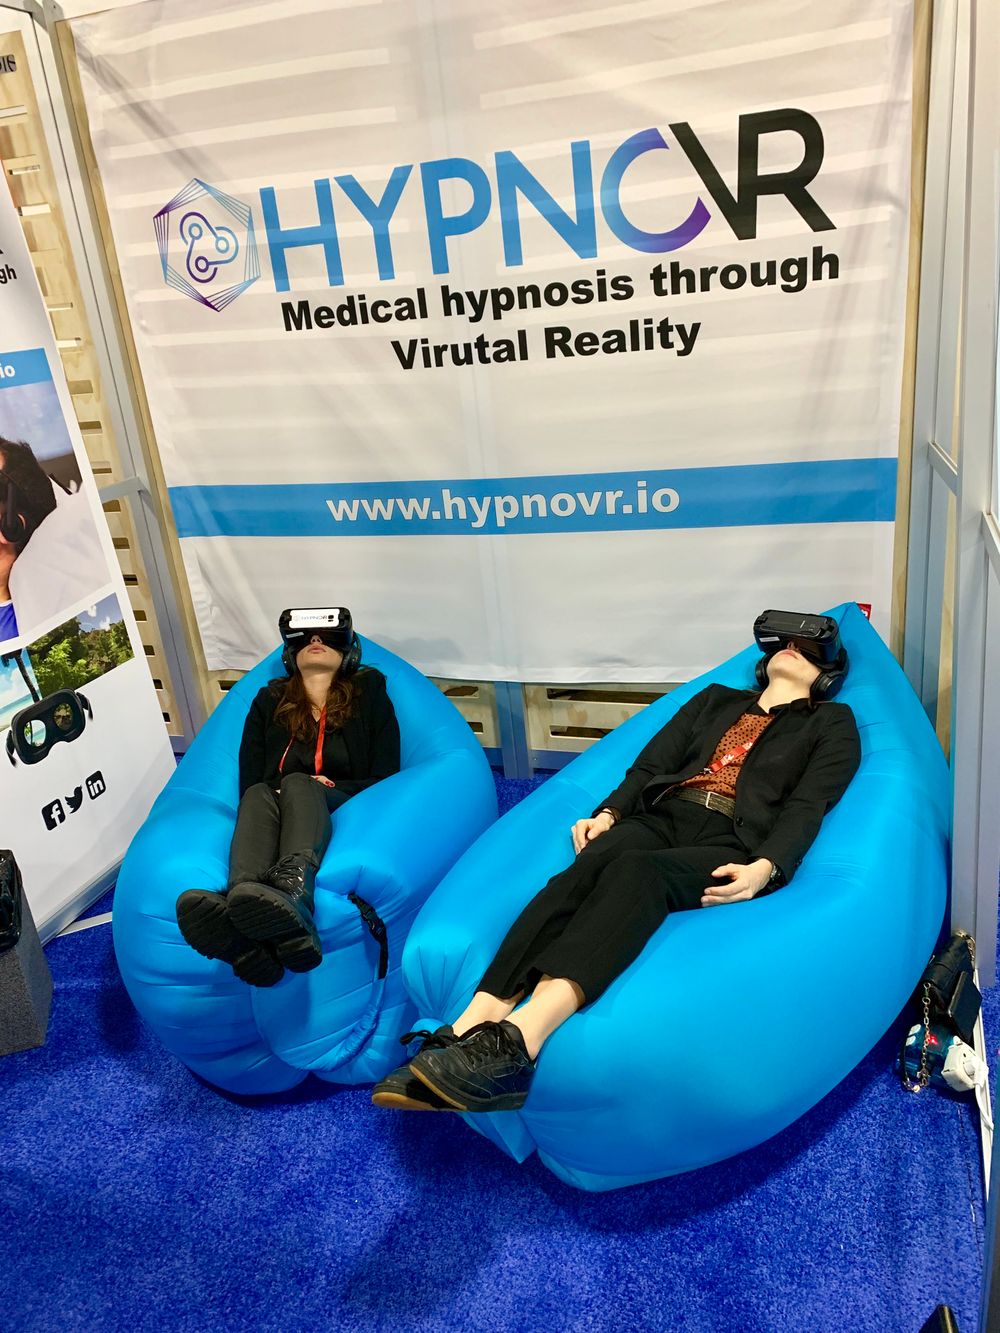 Selskapet Hypnovr tilbyr "medisinsk hypnose" ved hjelp av VR. Disse to lot seg i hvert fall ikke forstyrre.